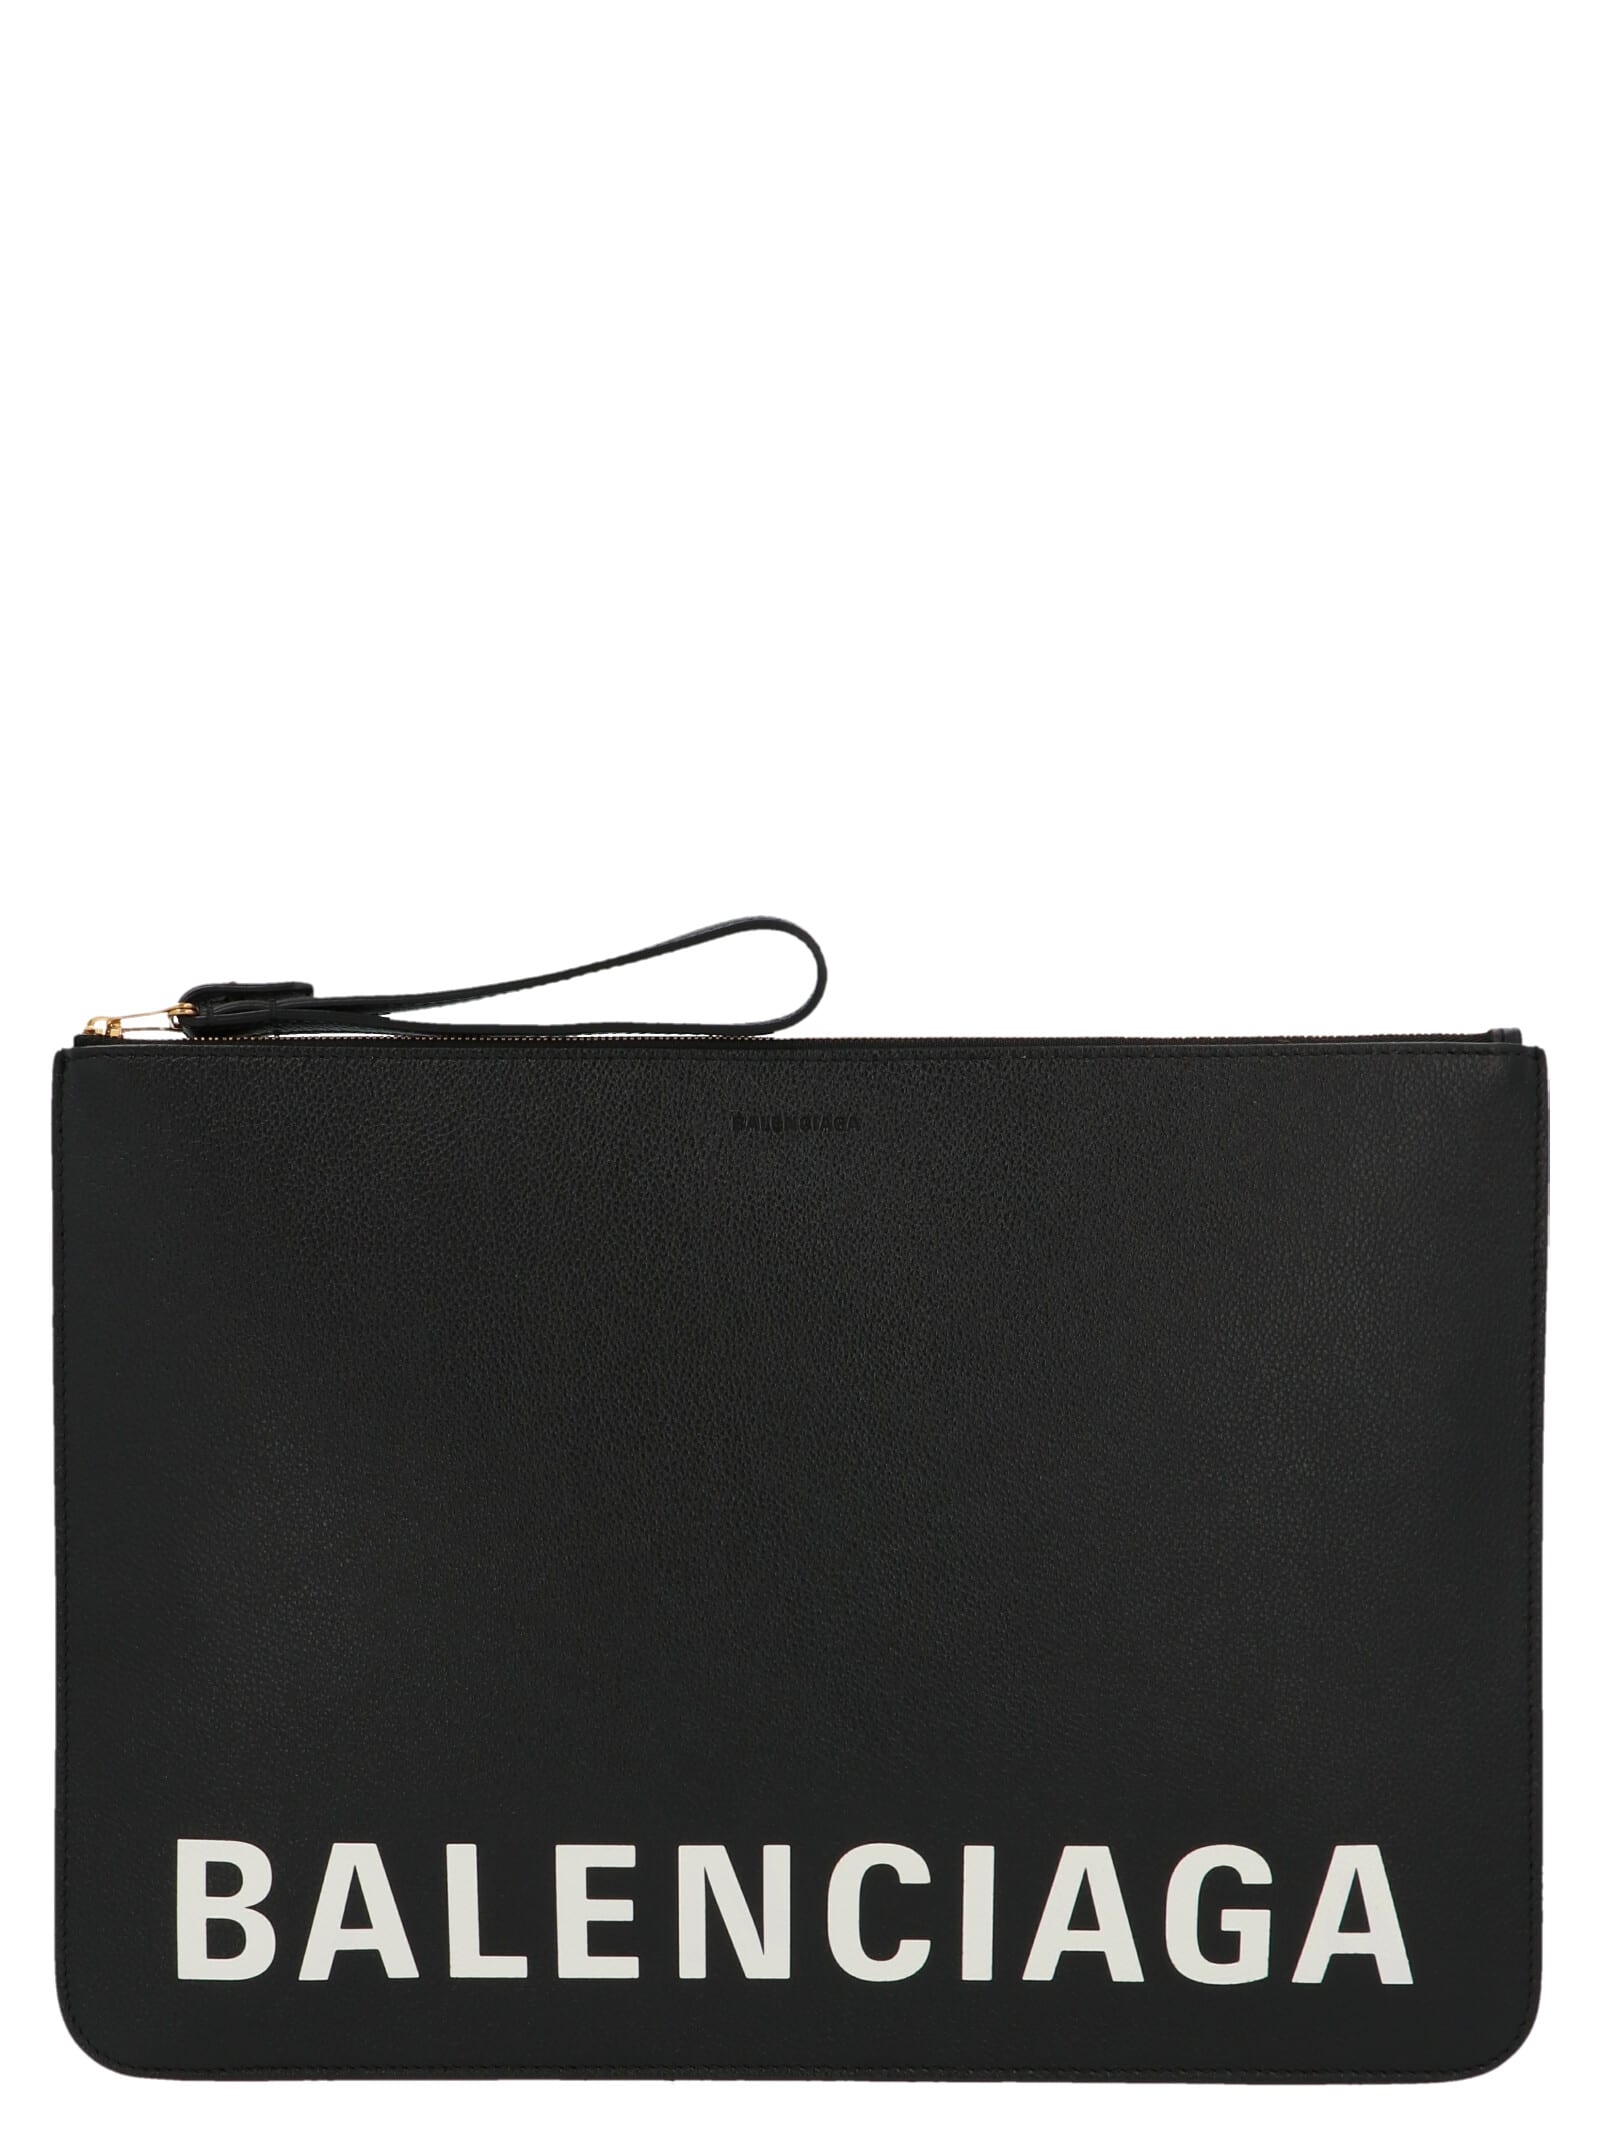 Balenciaga cash Bag